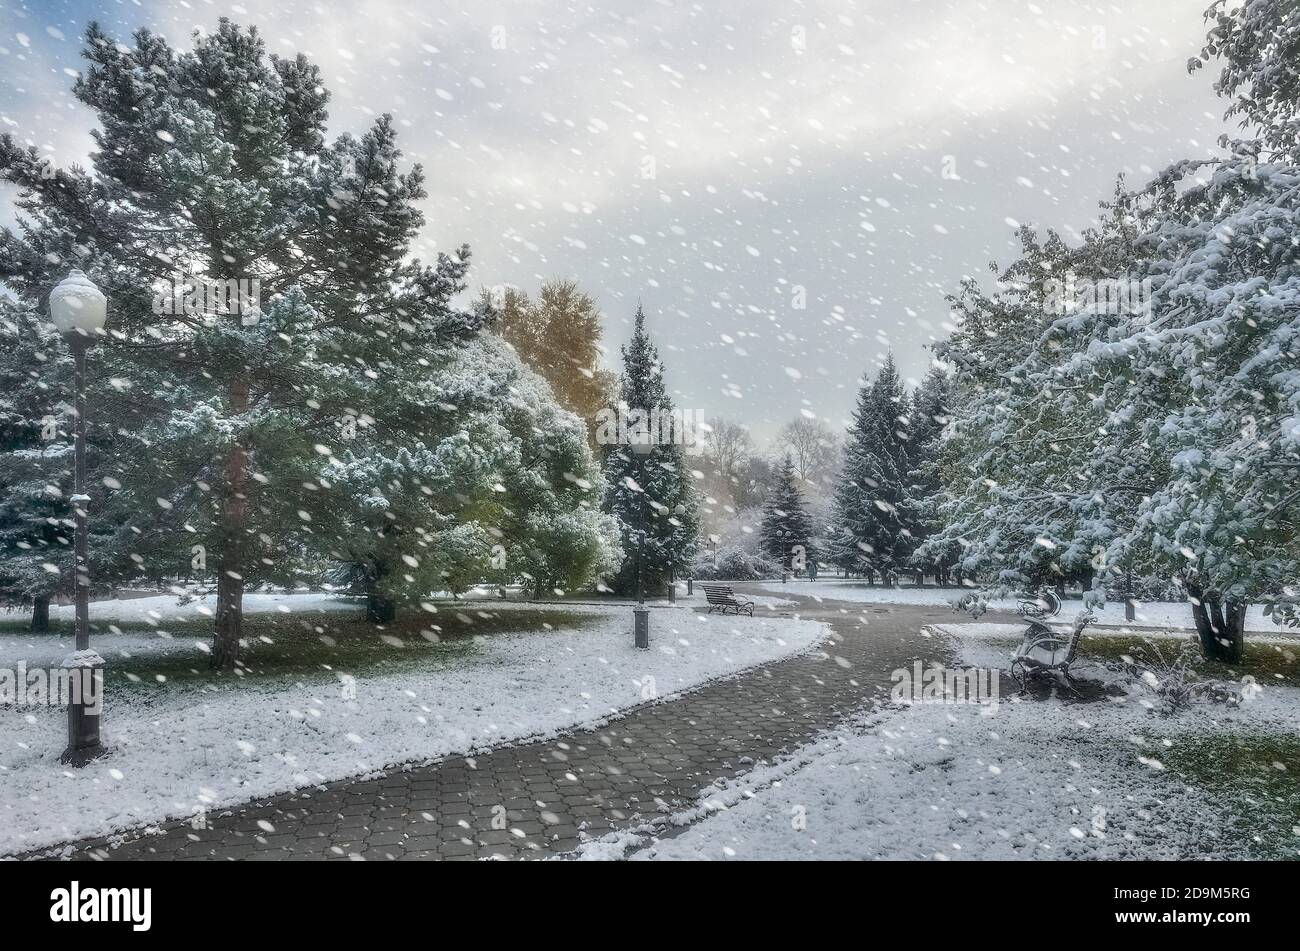 Erster Schneefall im bunten Herbst Stadtpark. Weiße flauschige Schnee bedeckte Bäume und Sträucher Laub, Nadeln von Tannen. Wechsel der Jahreszeiten - Märchen von w Stockfoto